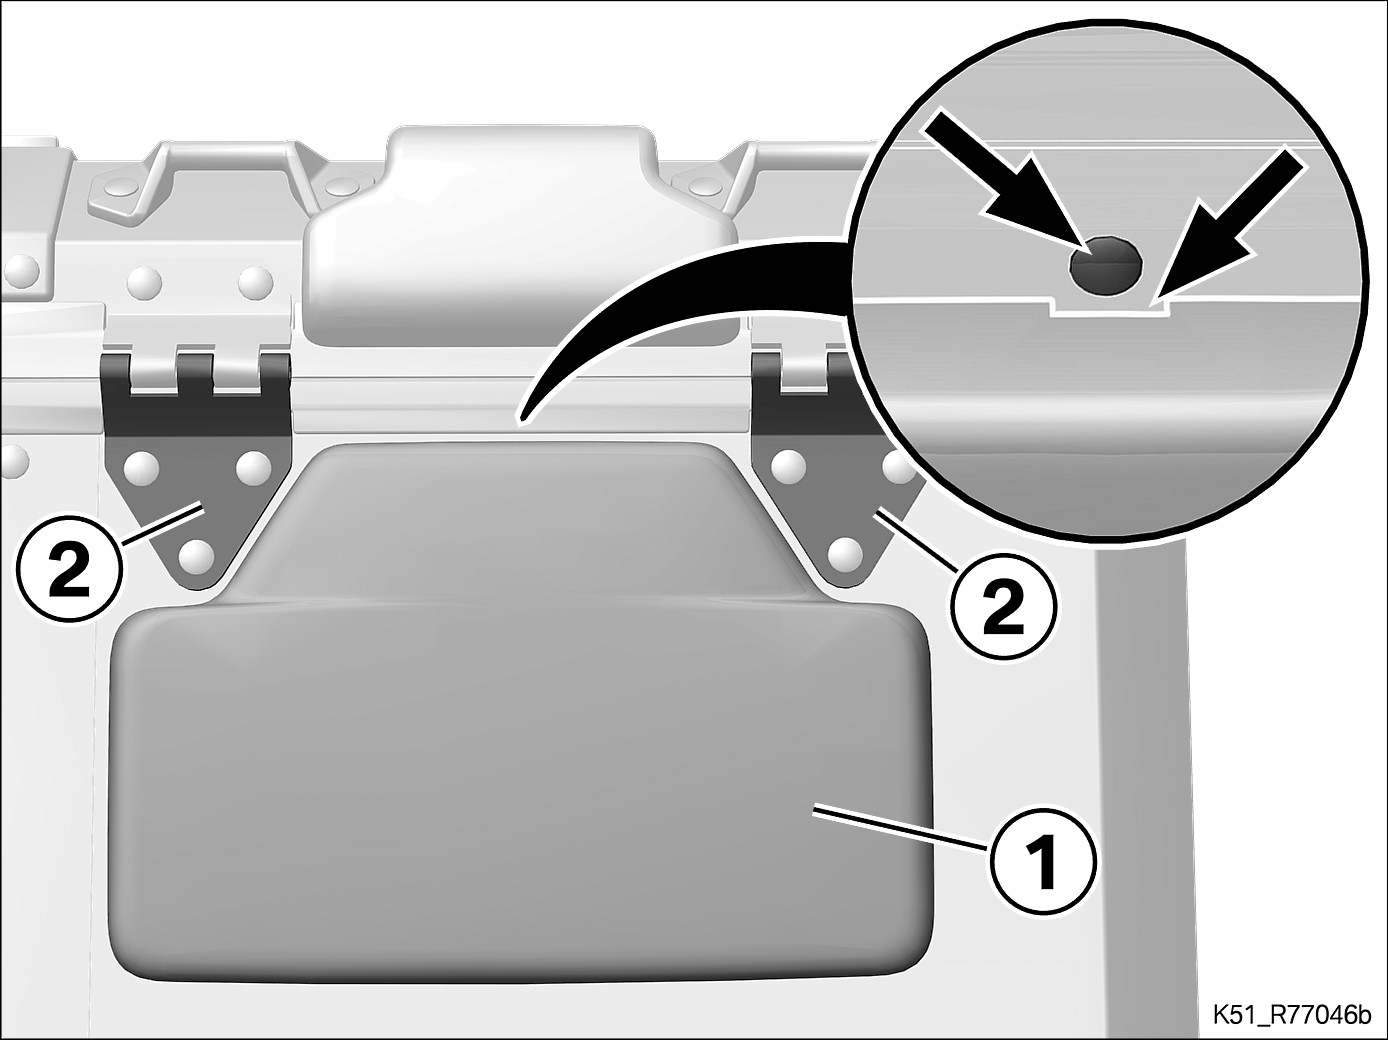 Ευθυγραμμίστε το μαξιλάρι πλάτης (1) κεντραρισμένα ανάμεσα στις δύο βάσεις στερέωσης των μεντεσέδων (2). Το πριτσίνι (βέλος) βρίσκεται κεντρικά στην εγκοπή (βέλος).